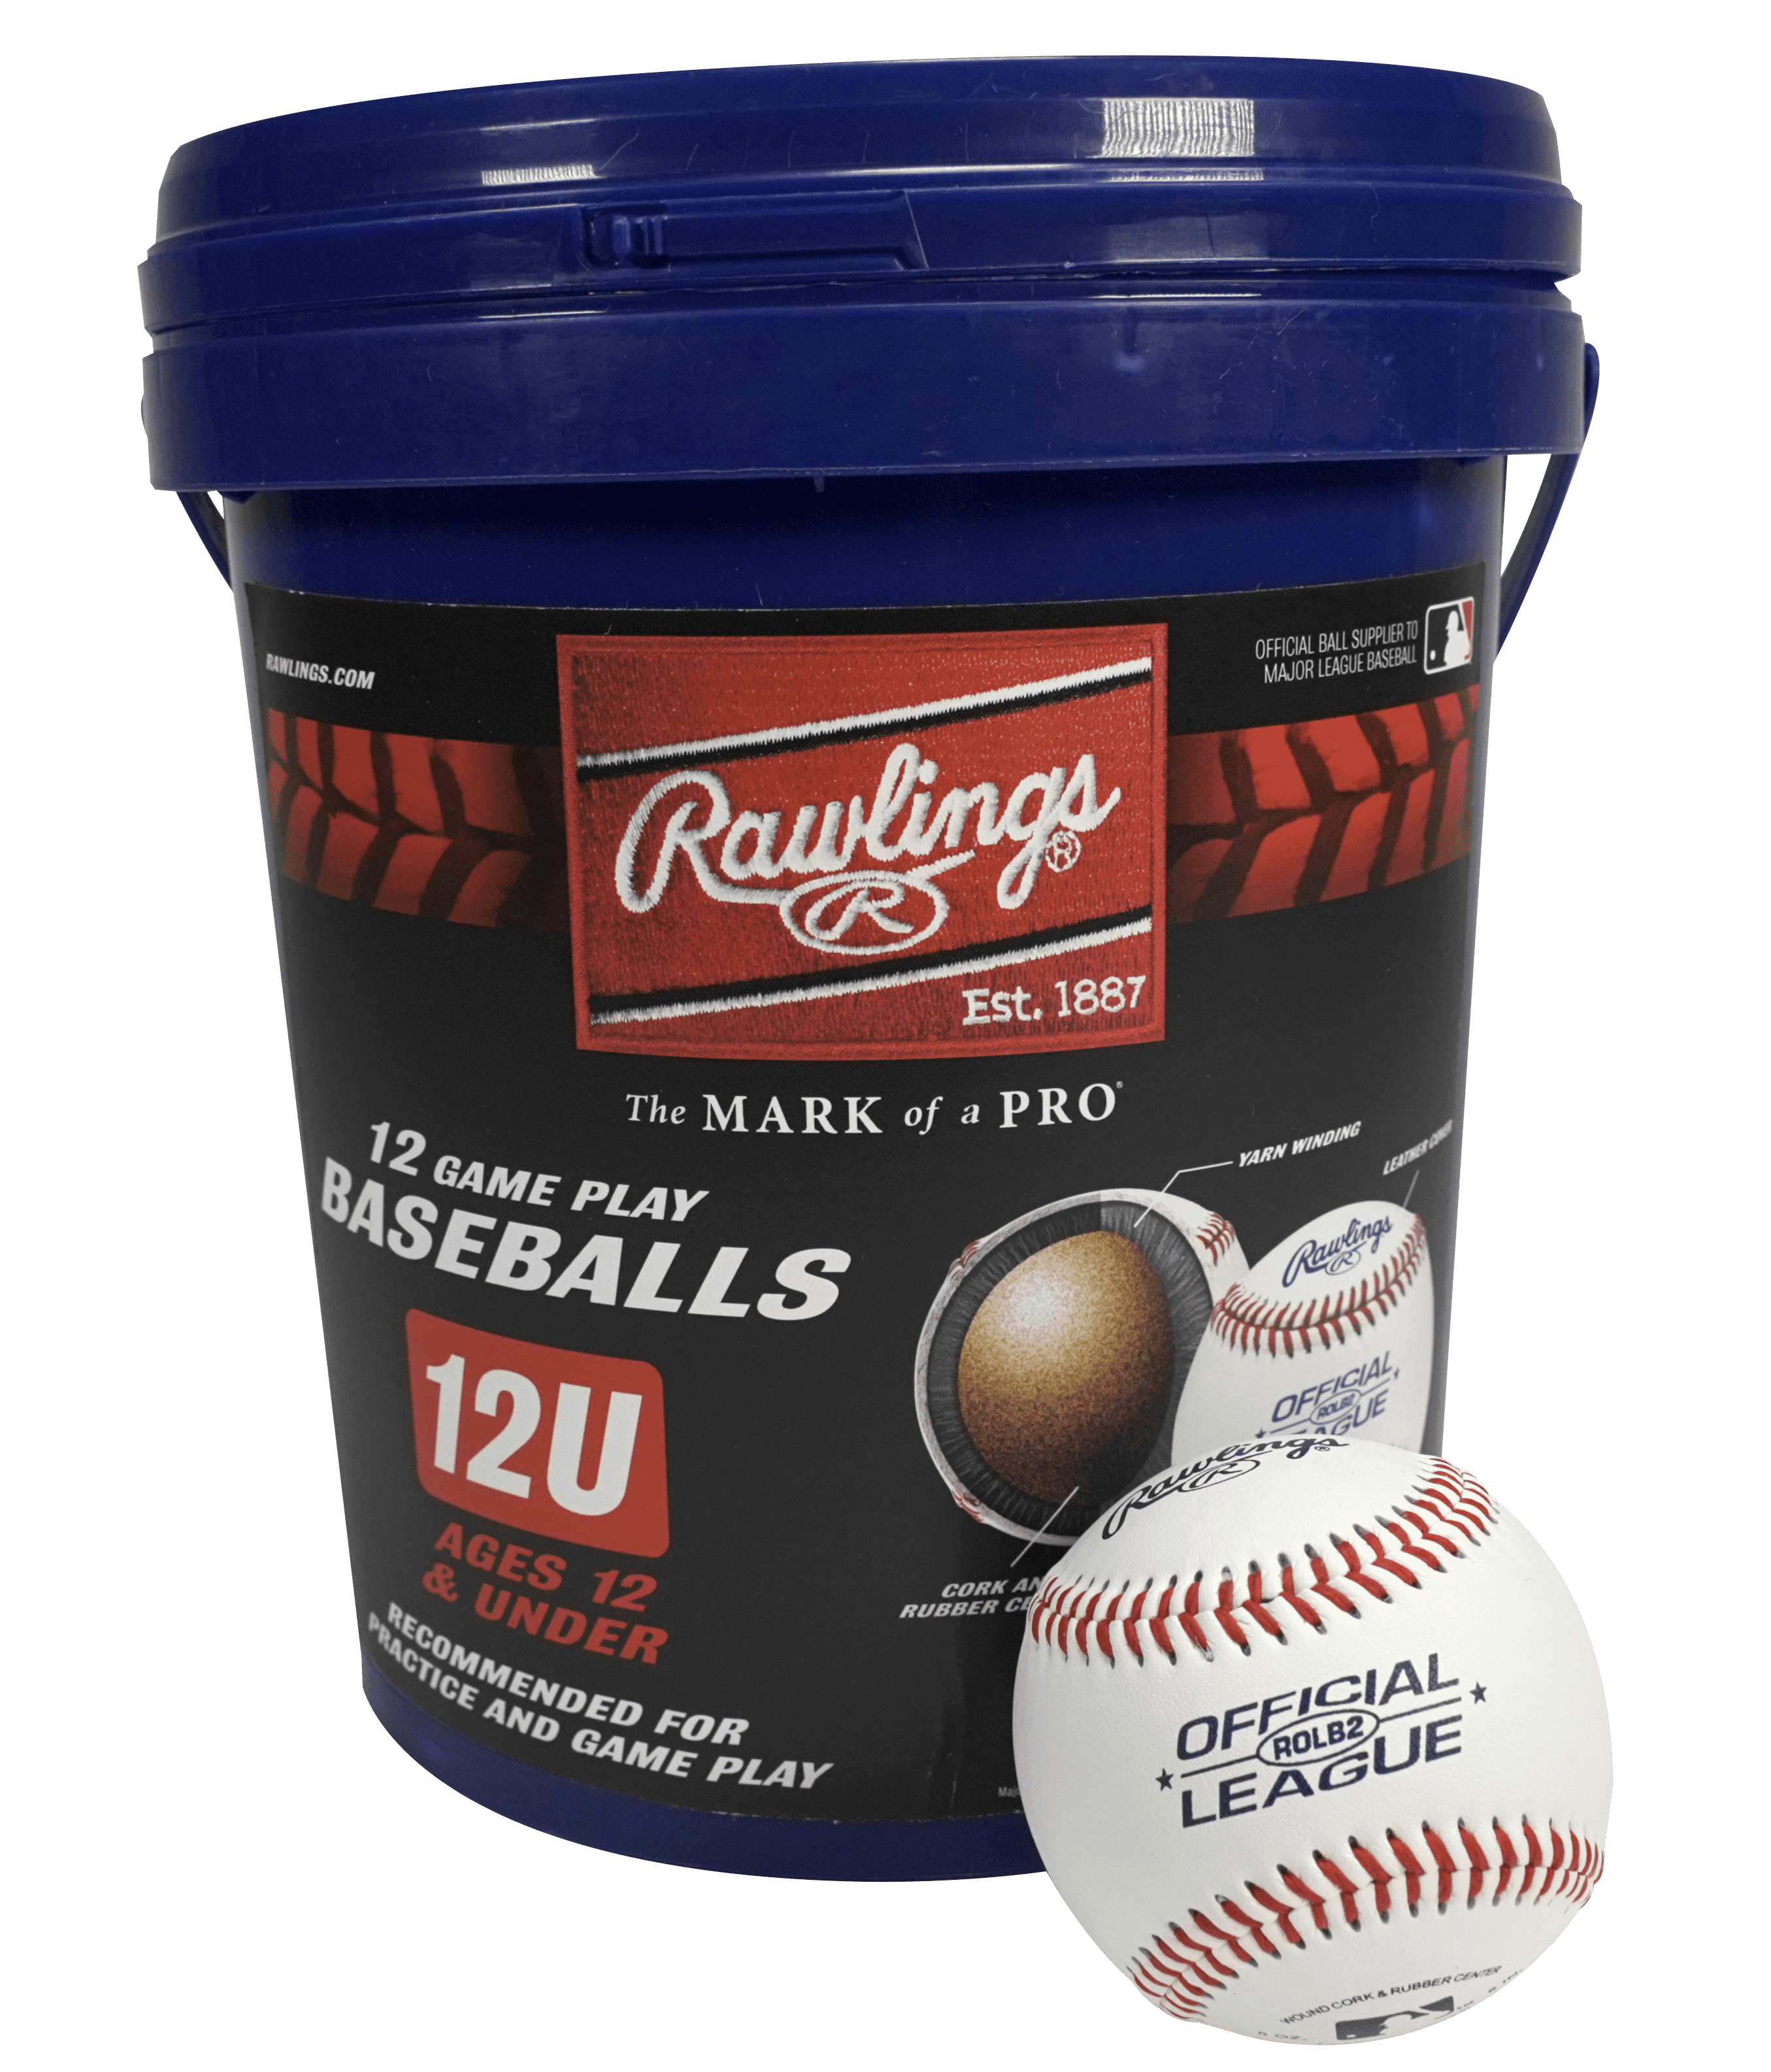 New Sealed Rawlings 12 Game Play Baseballs 10U Bucket CROLB 5 oz 9" Leathr Cork 